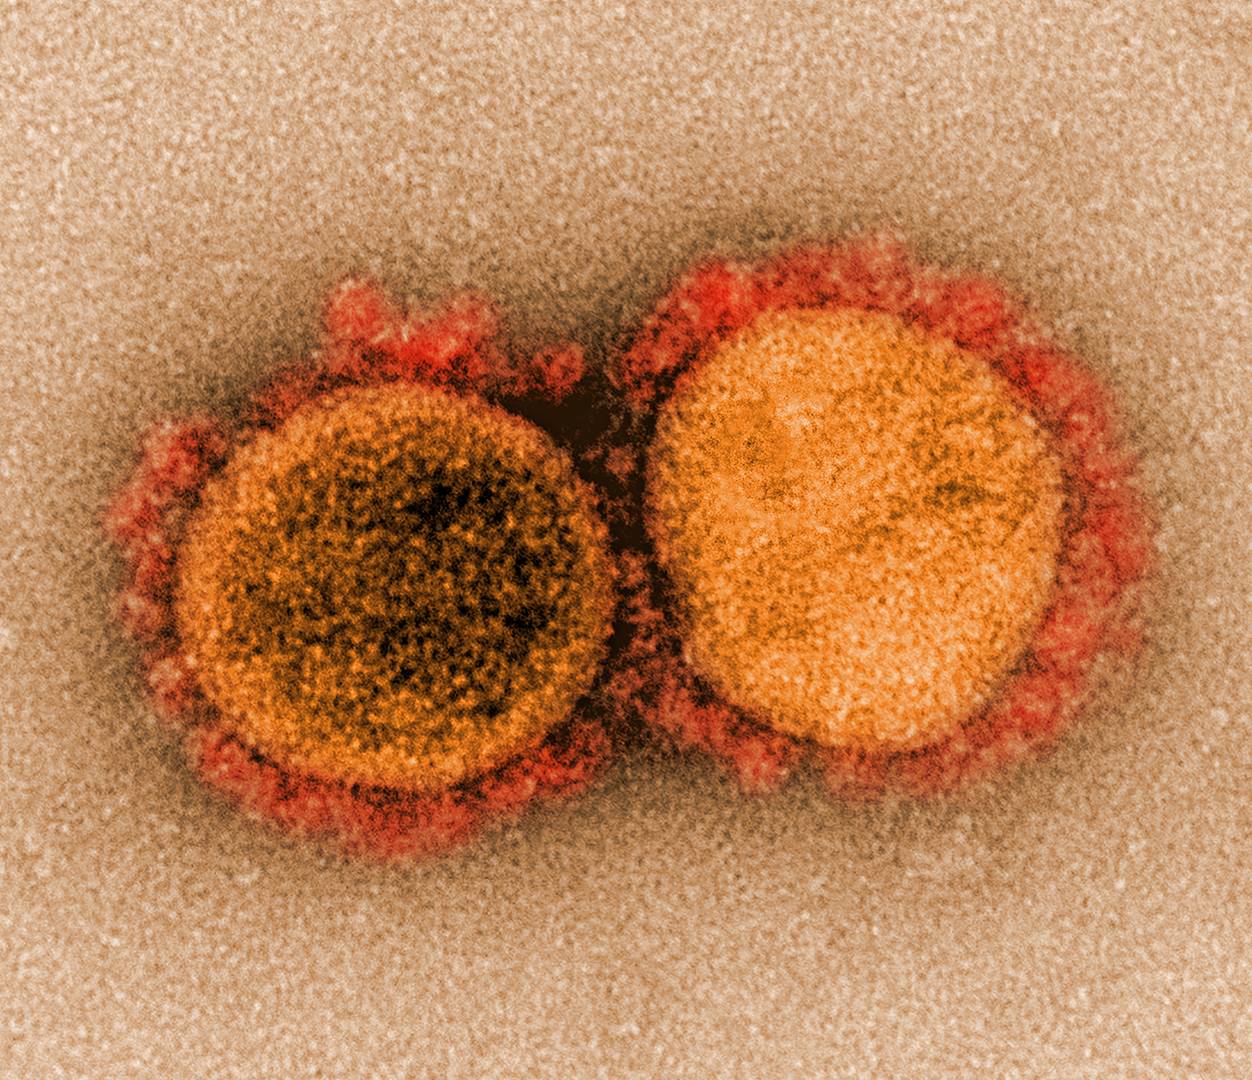 Изображение SARS-CoV‑2, полученное с помощью просвечивающей электронной микроскопии в Национальном институте аллергии и инфекционных заболеваний в Форте Детрик